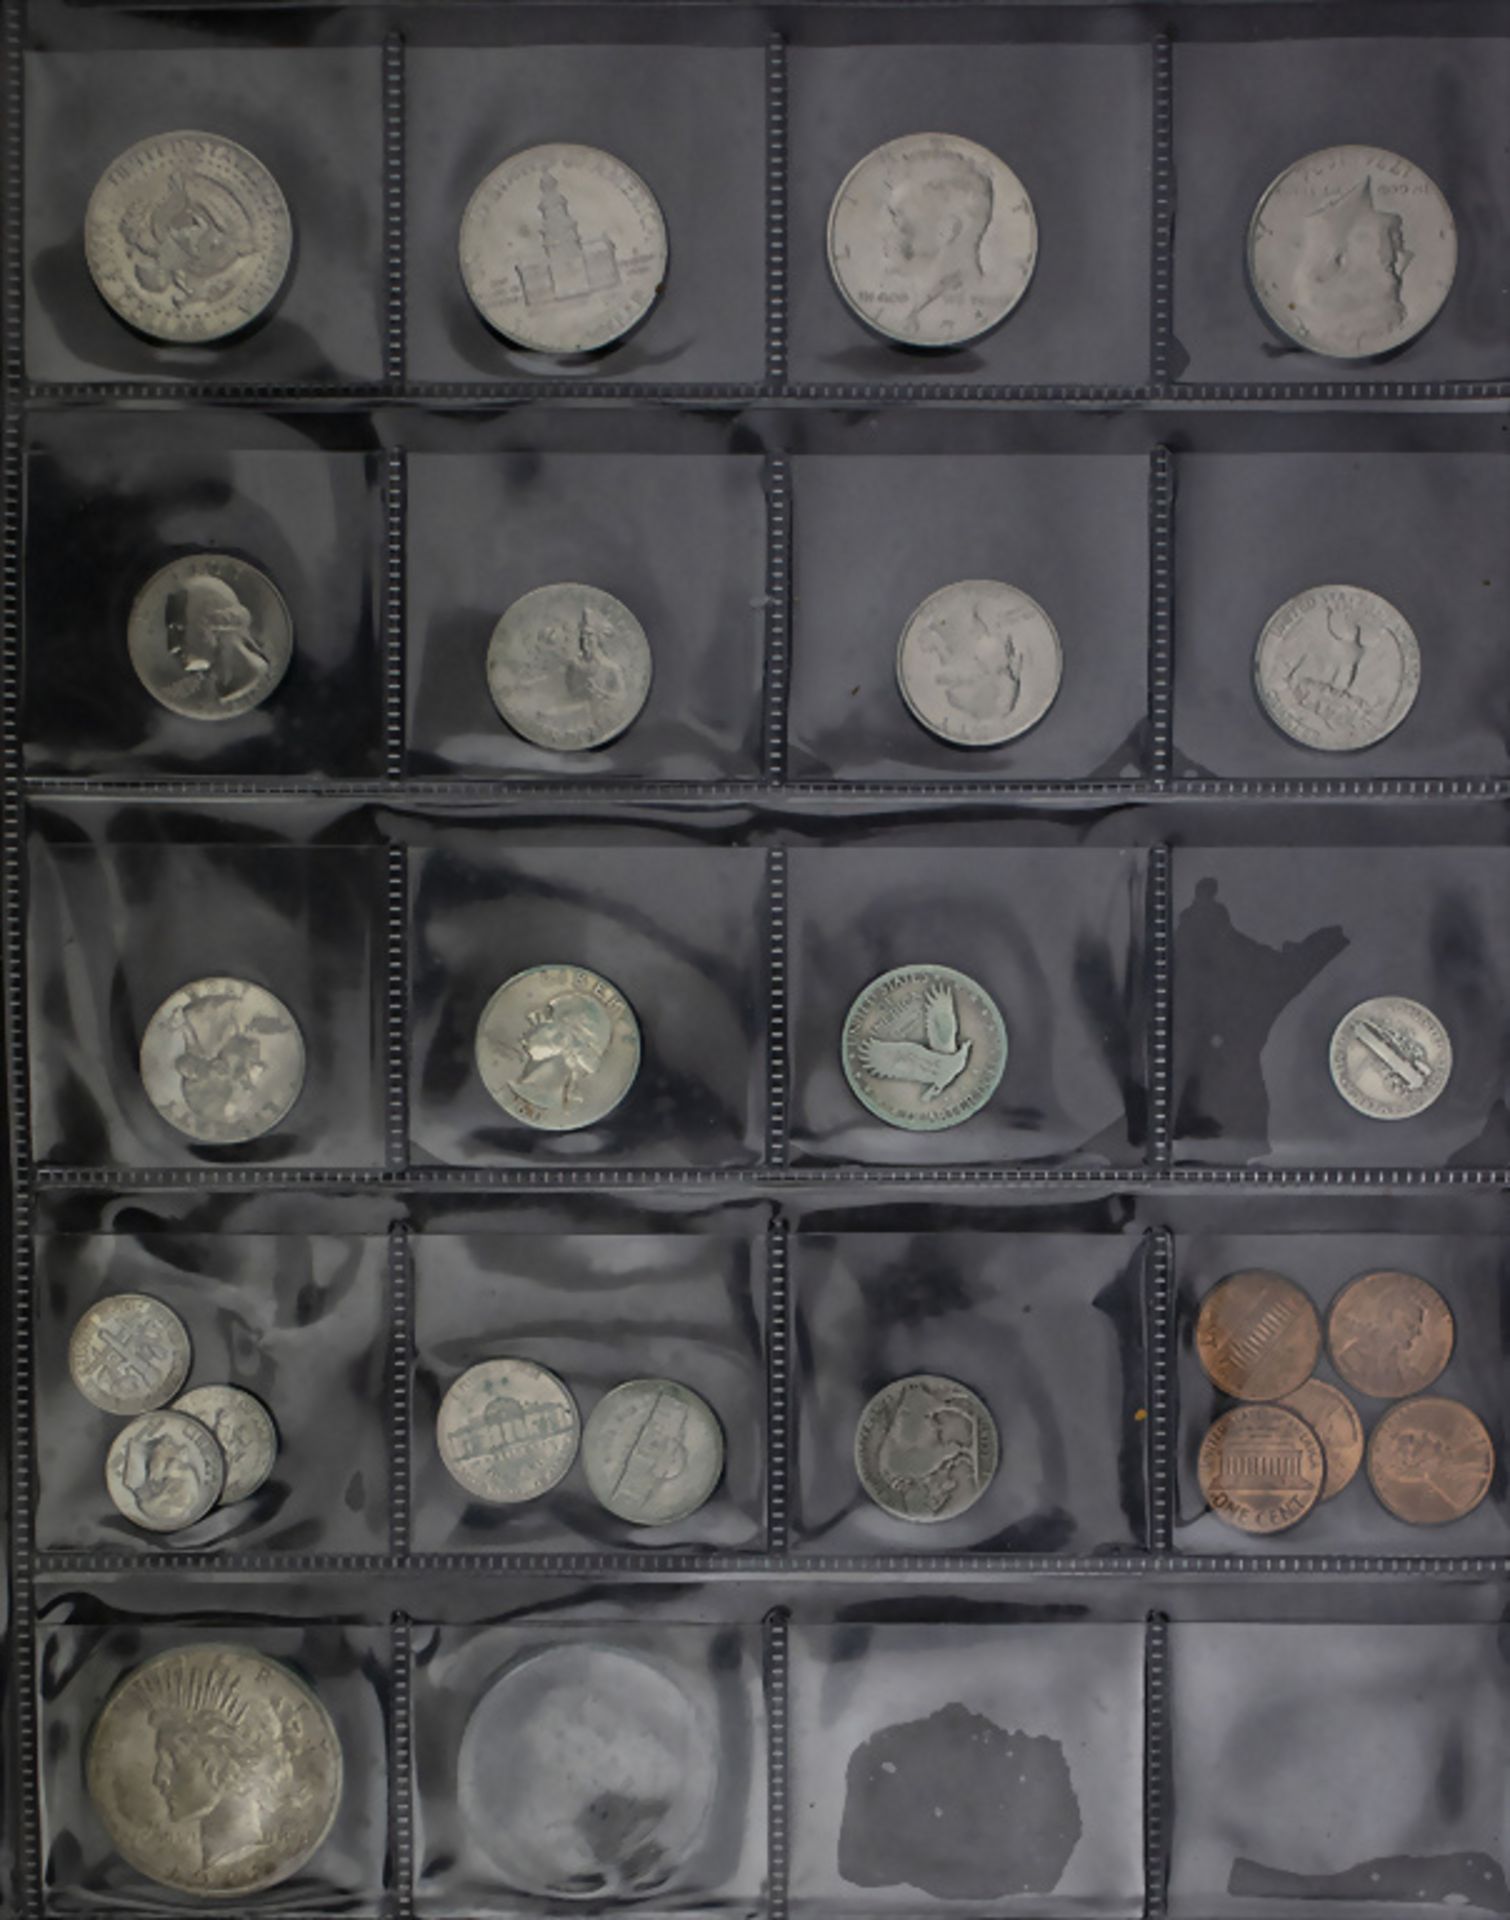 Sammlung Münzen 'USA' / A collection of US coins